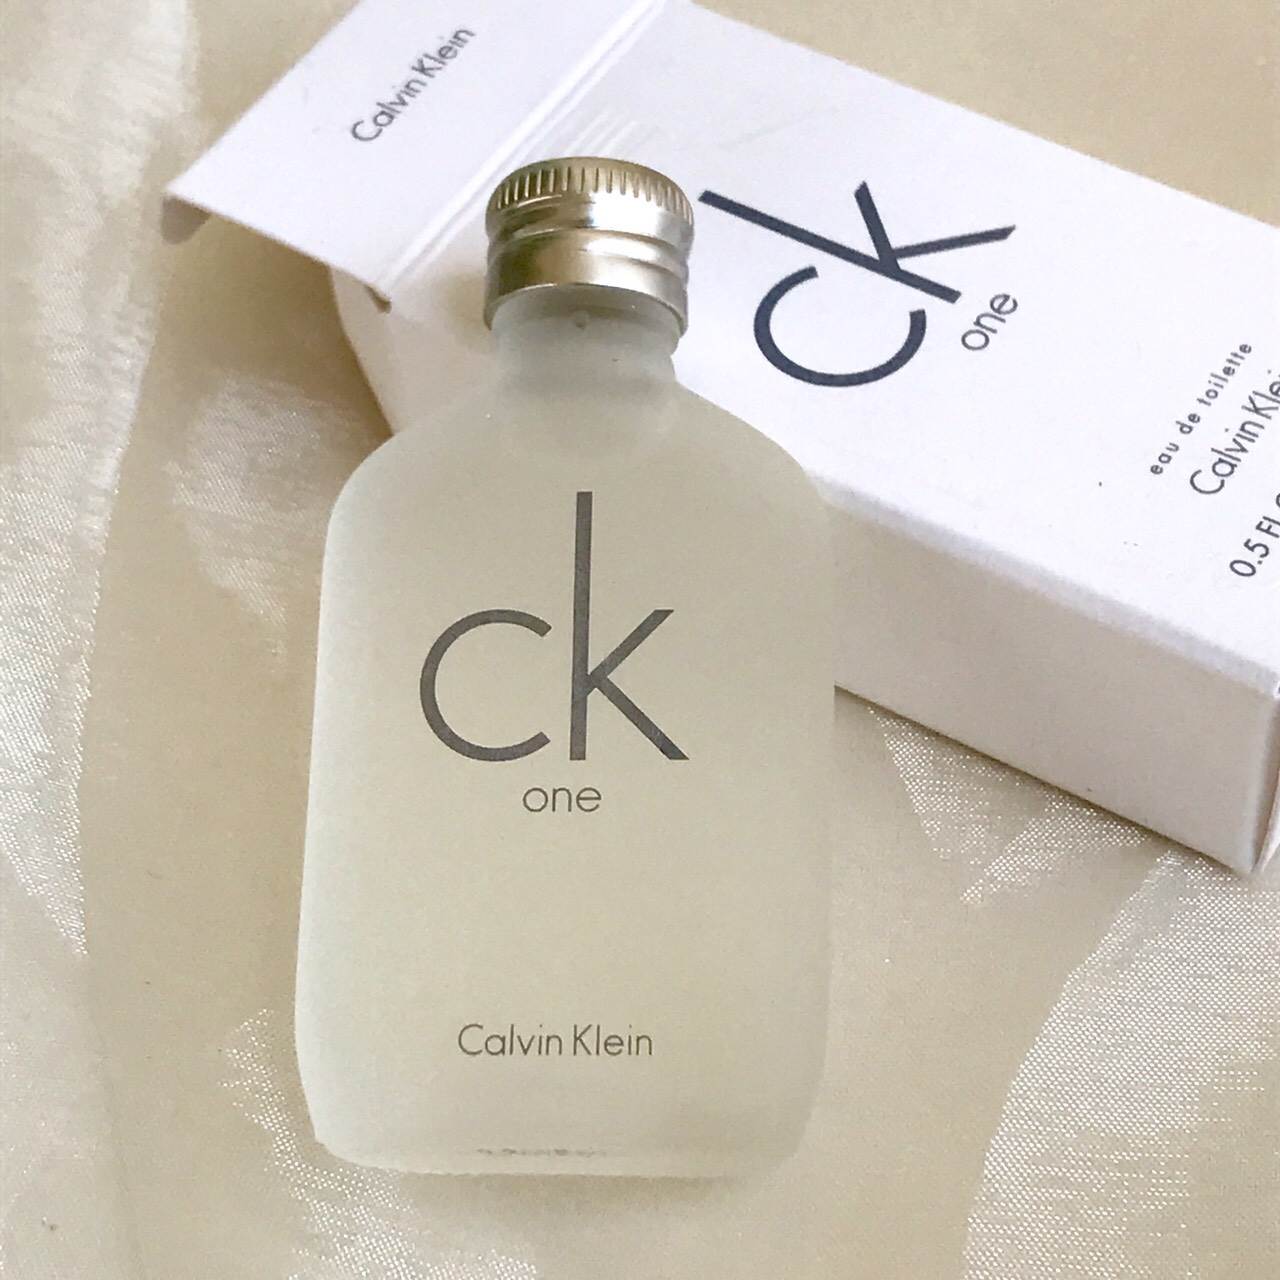 Calvin Klein CK One EDT 100ml.